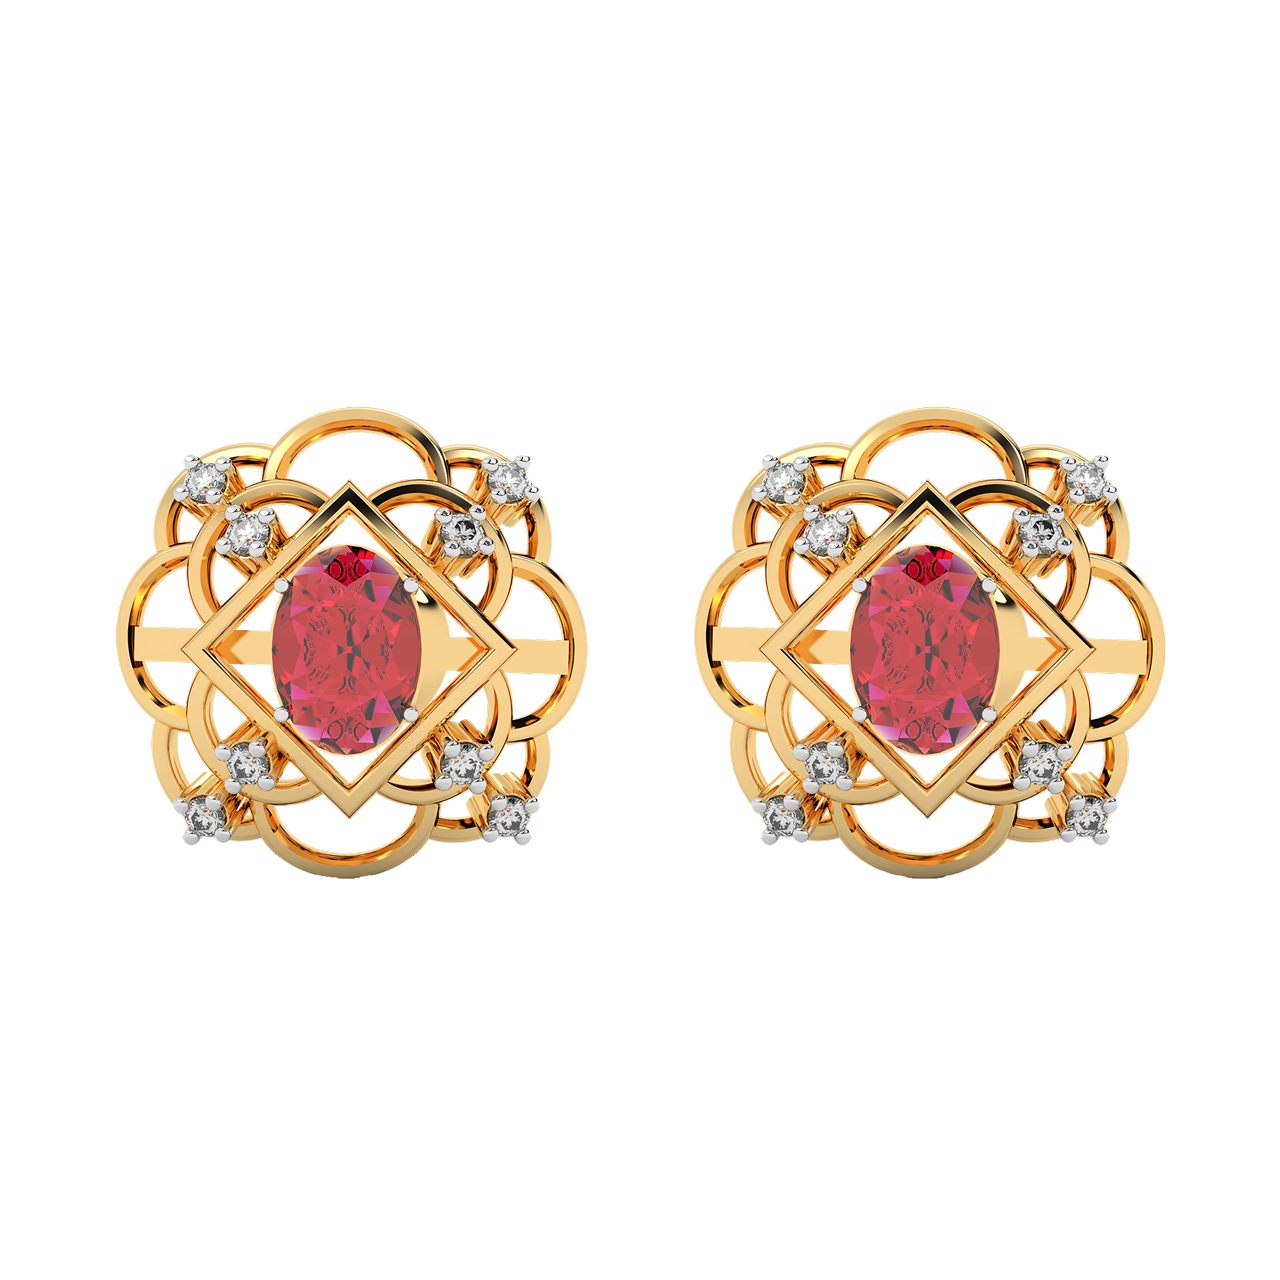 Floral Design Diamond Stud Earrings